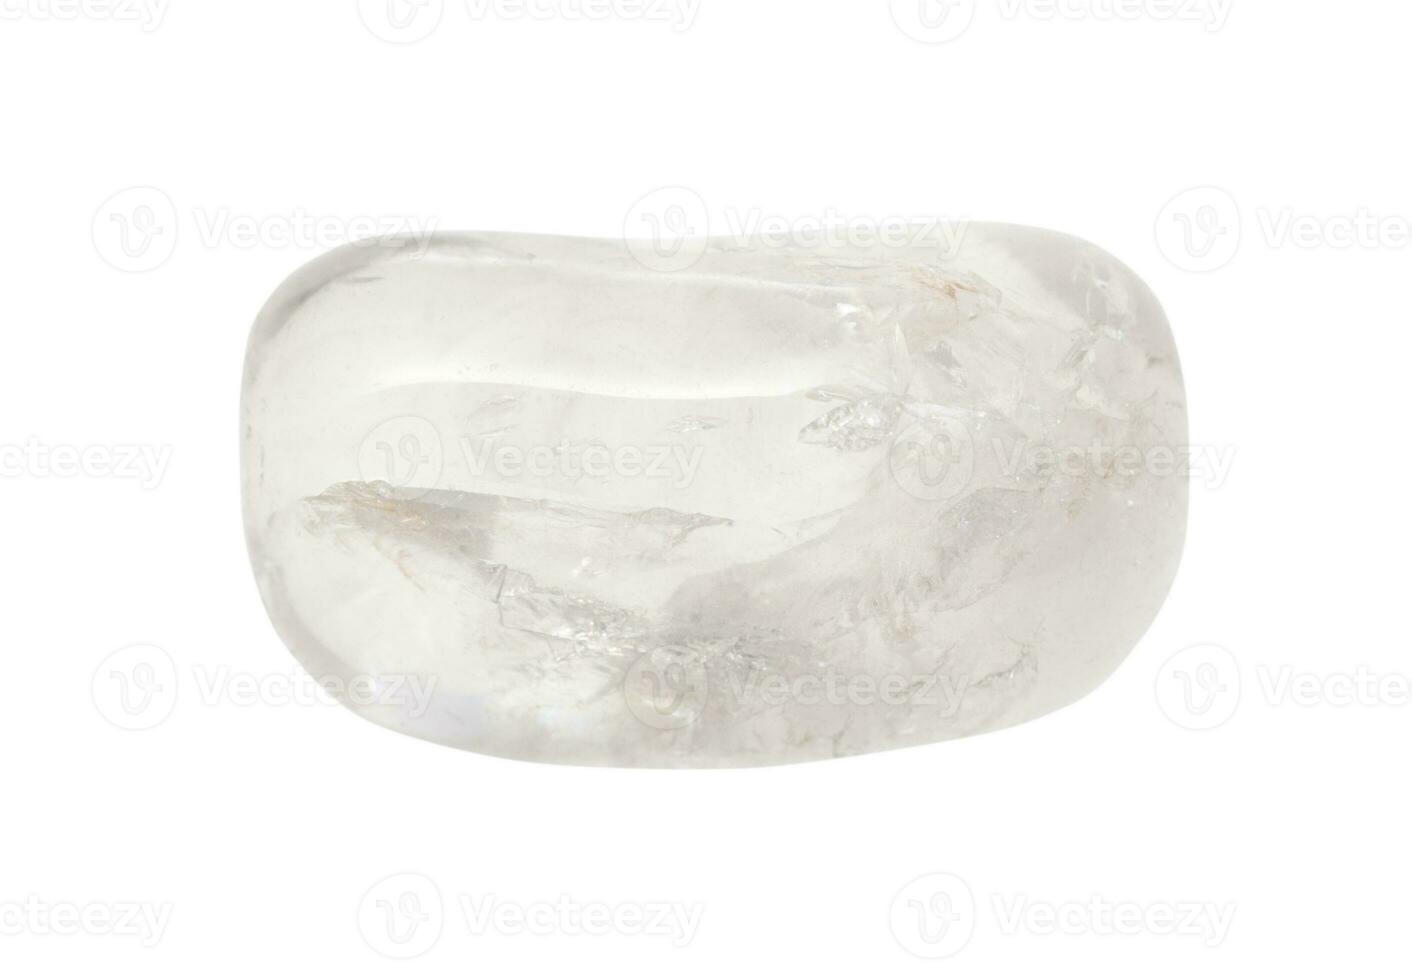 arrollado incoloro rock cristal piedra preciosa aislado foto